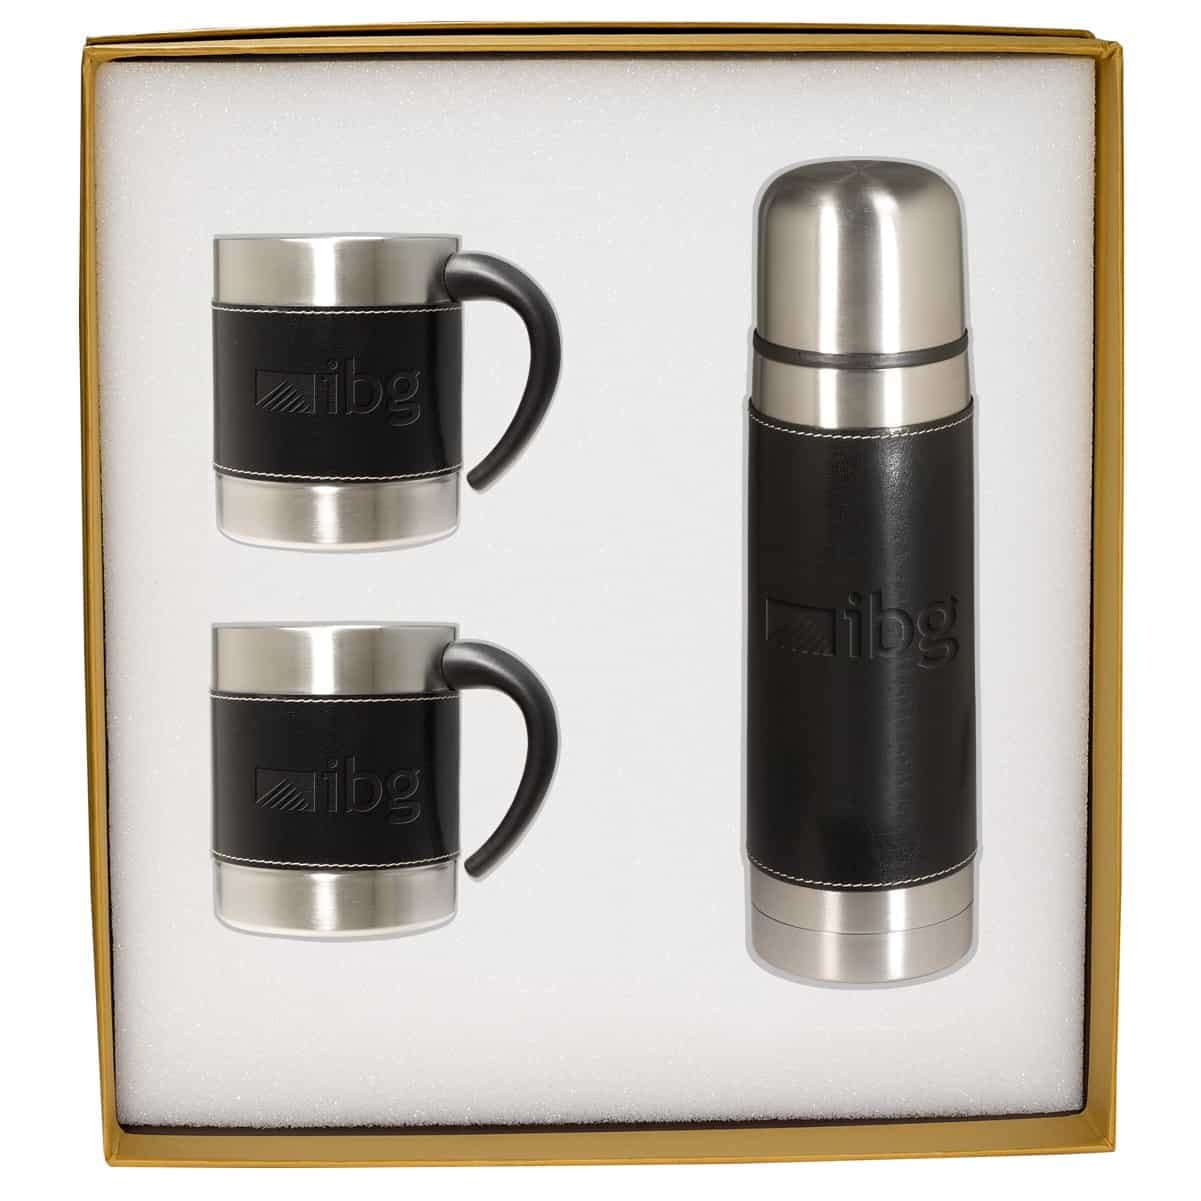 thermal coffee mug with handle and lid